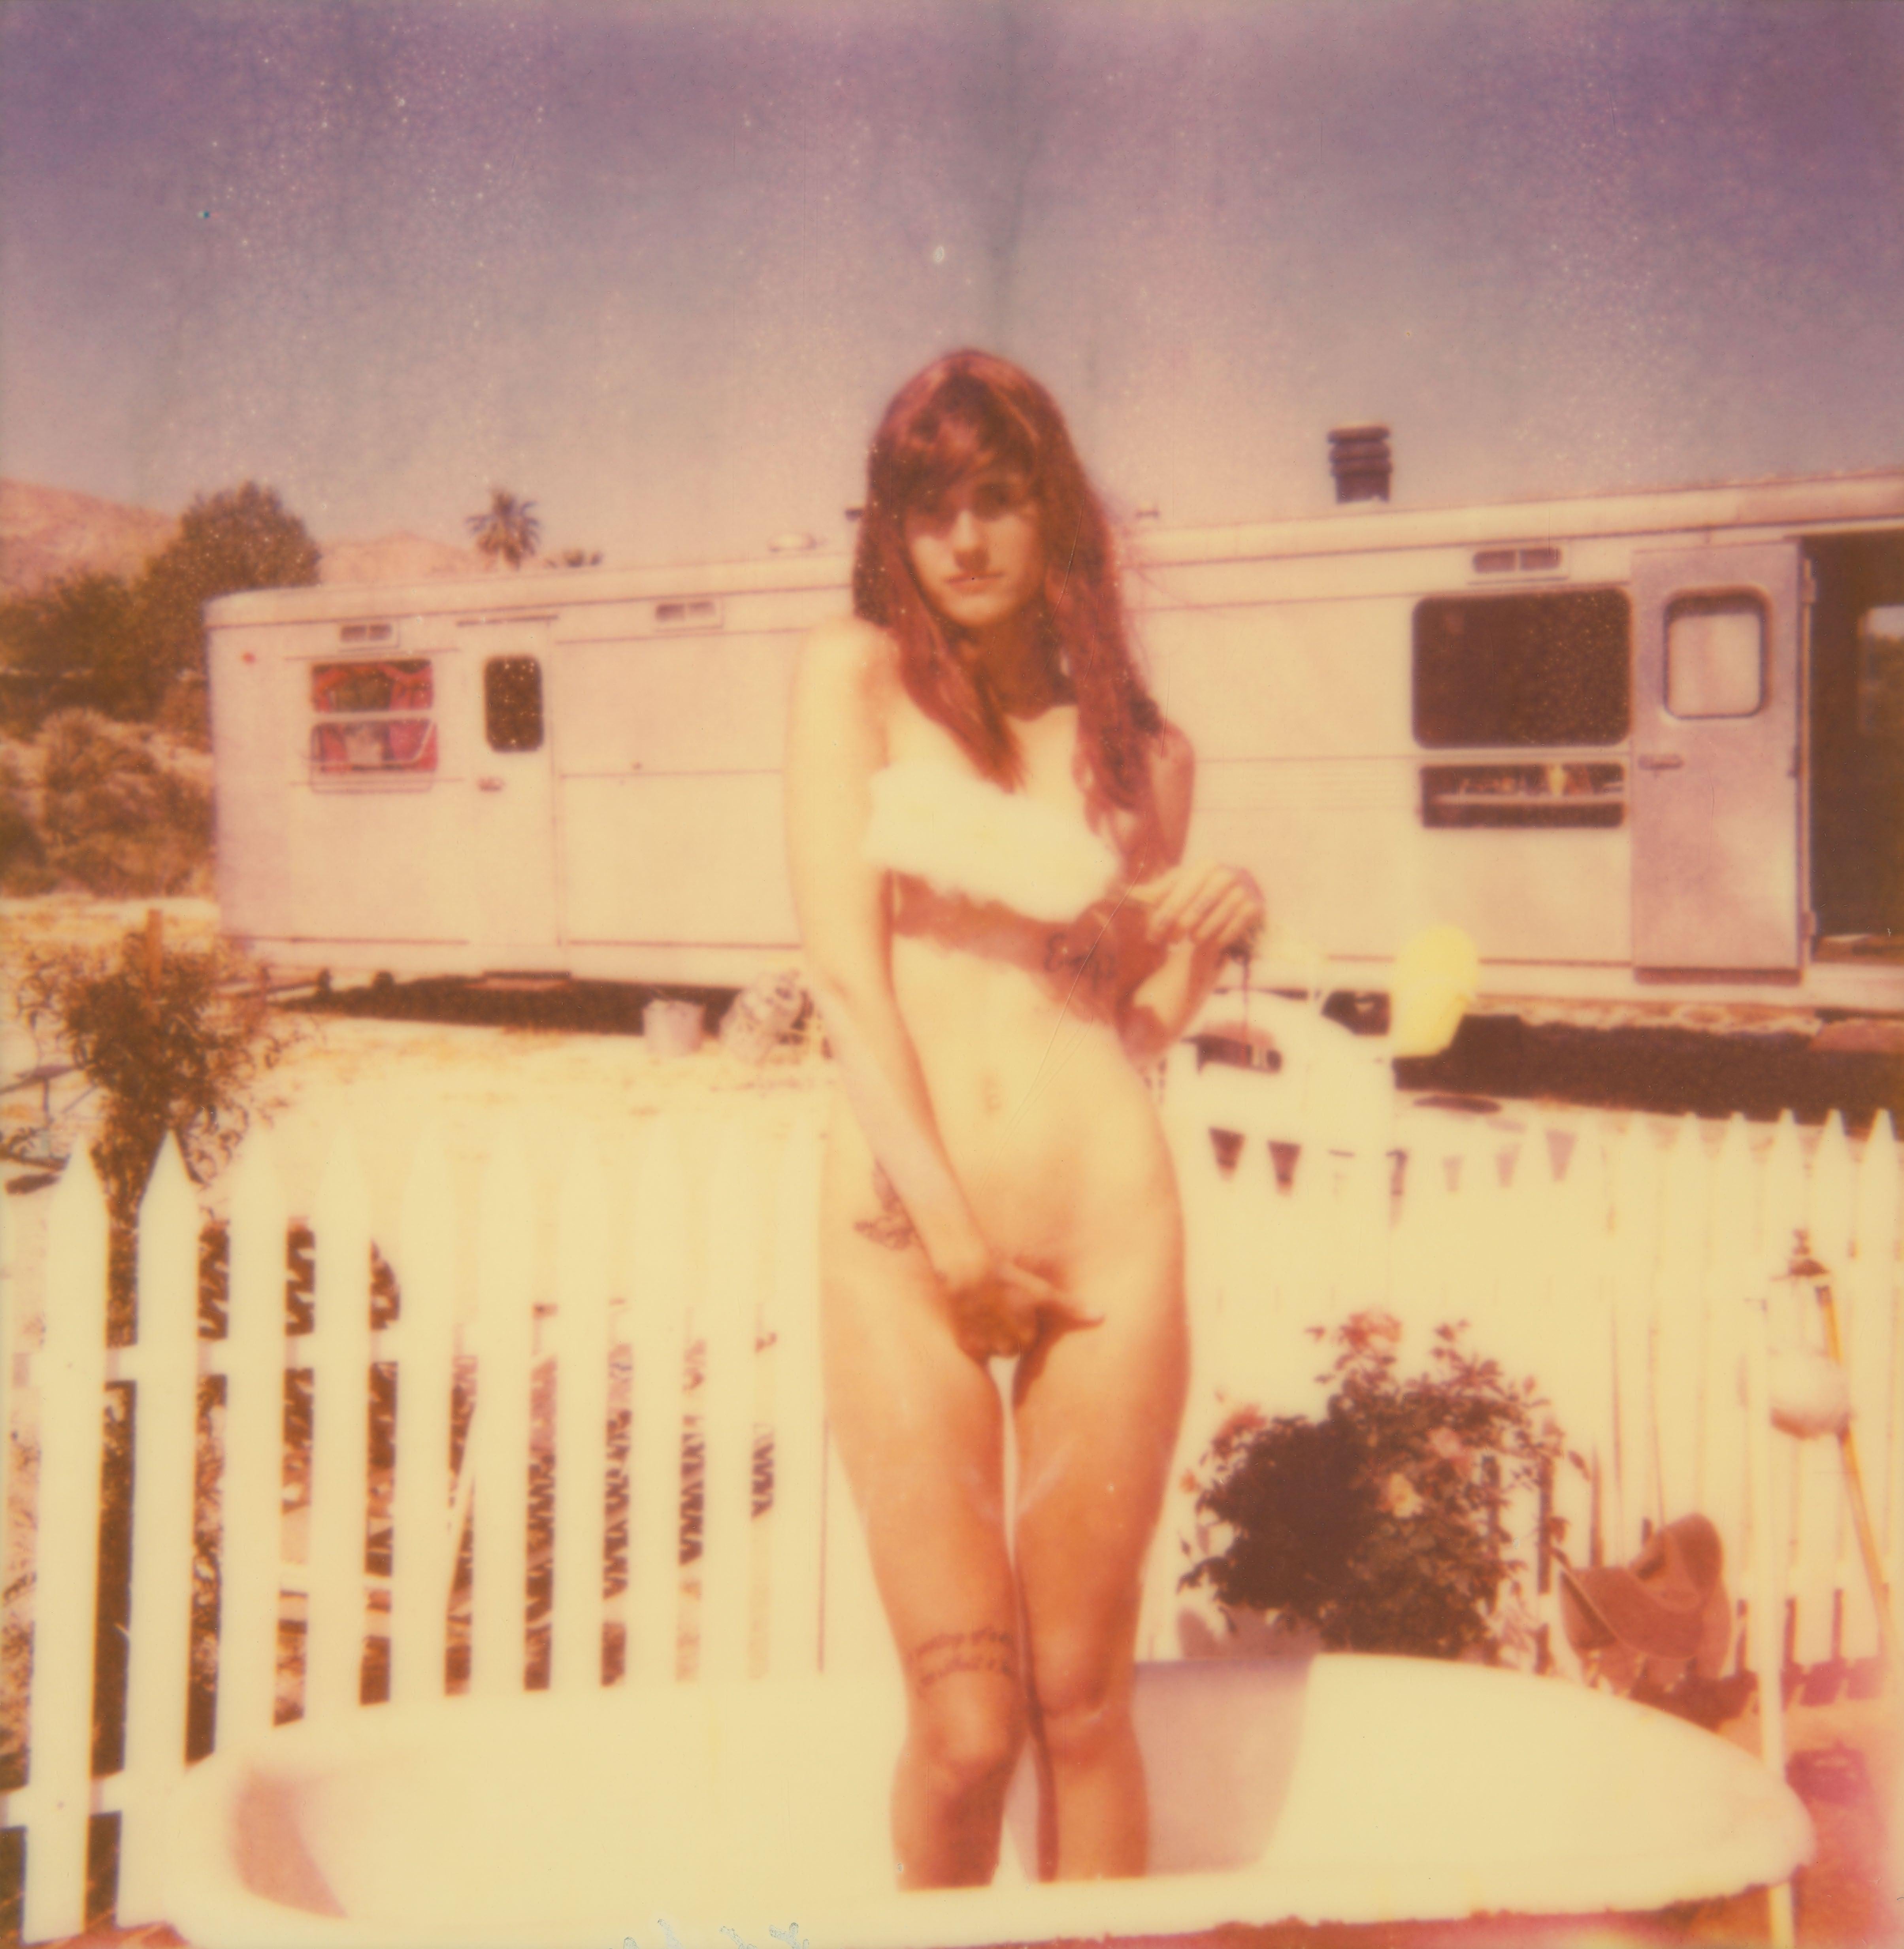 Stefanie Schneider Nude Photograph – The Girl II (Behind the White Picket Fence) – 38x36cm – auf einem Polaroid basiert